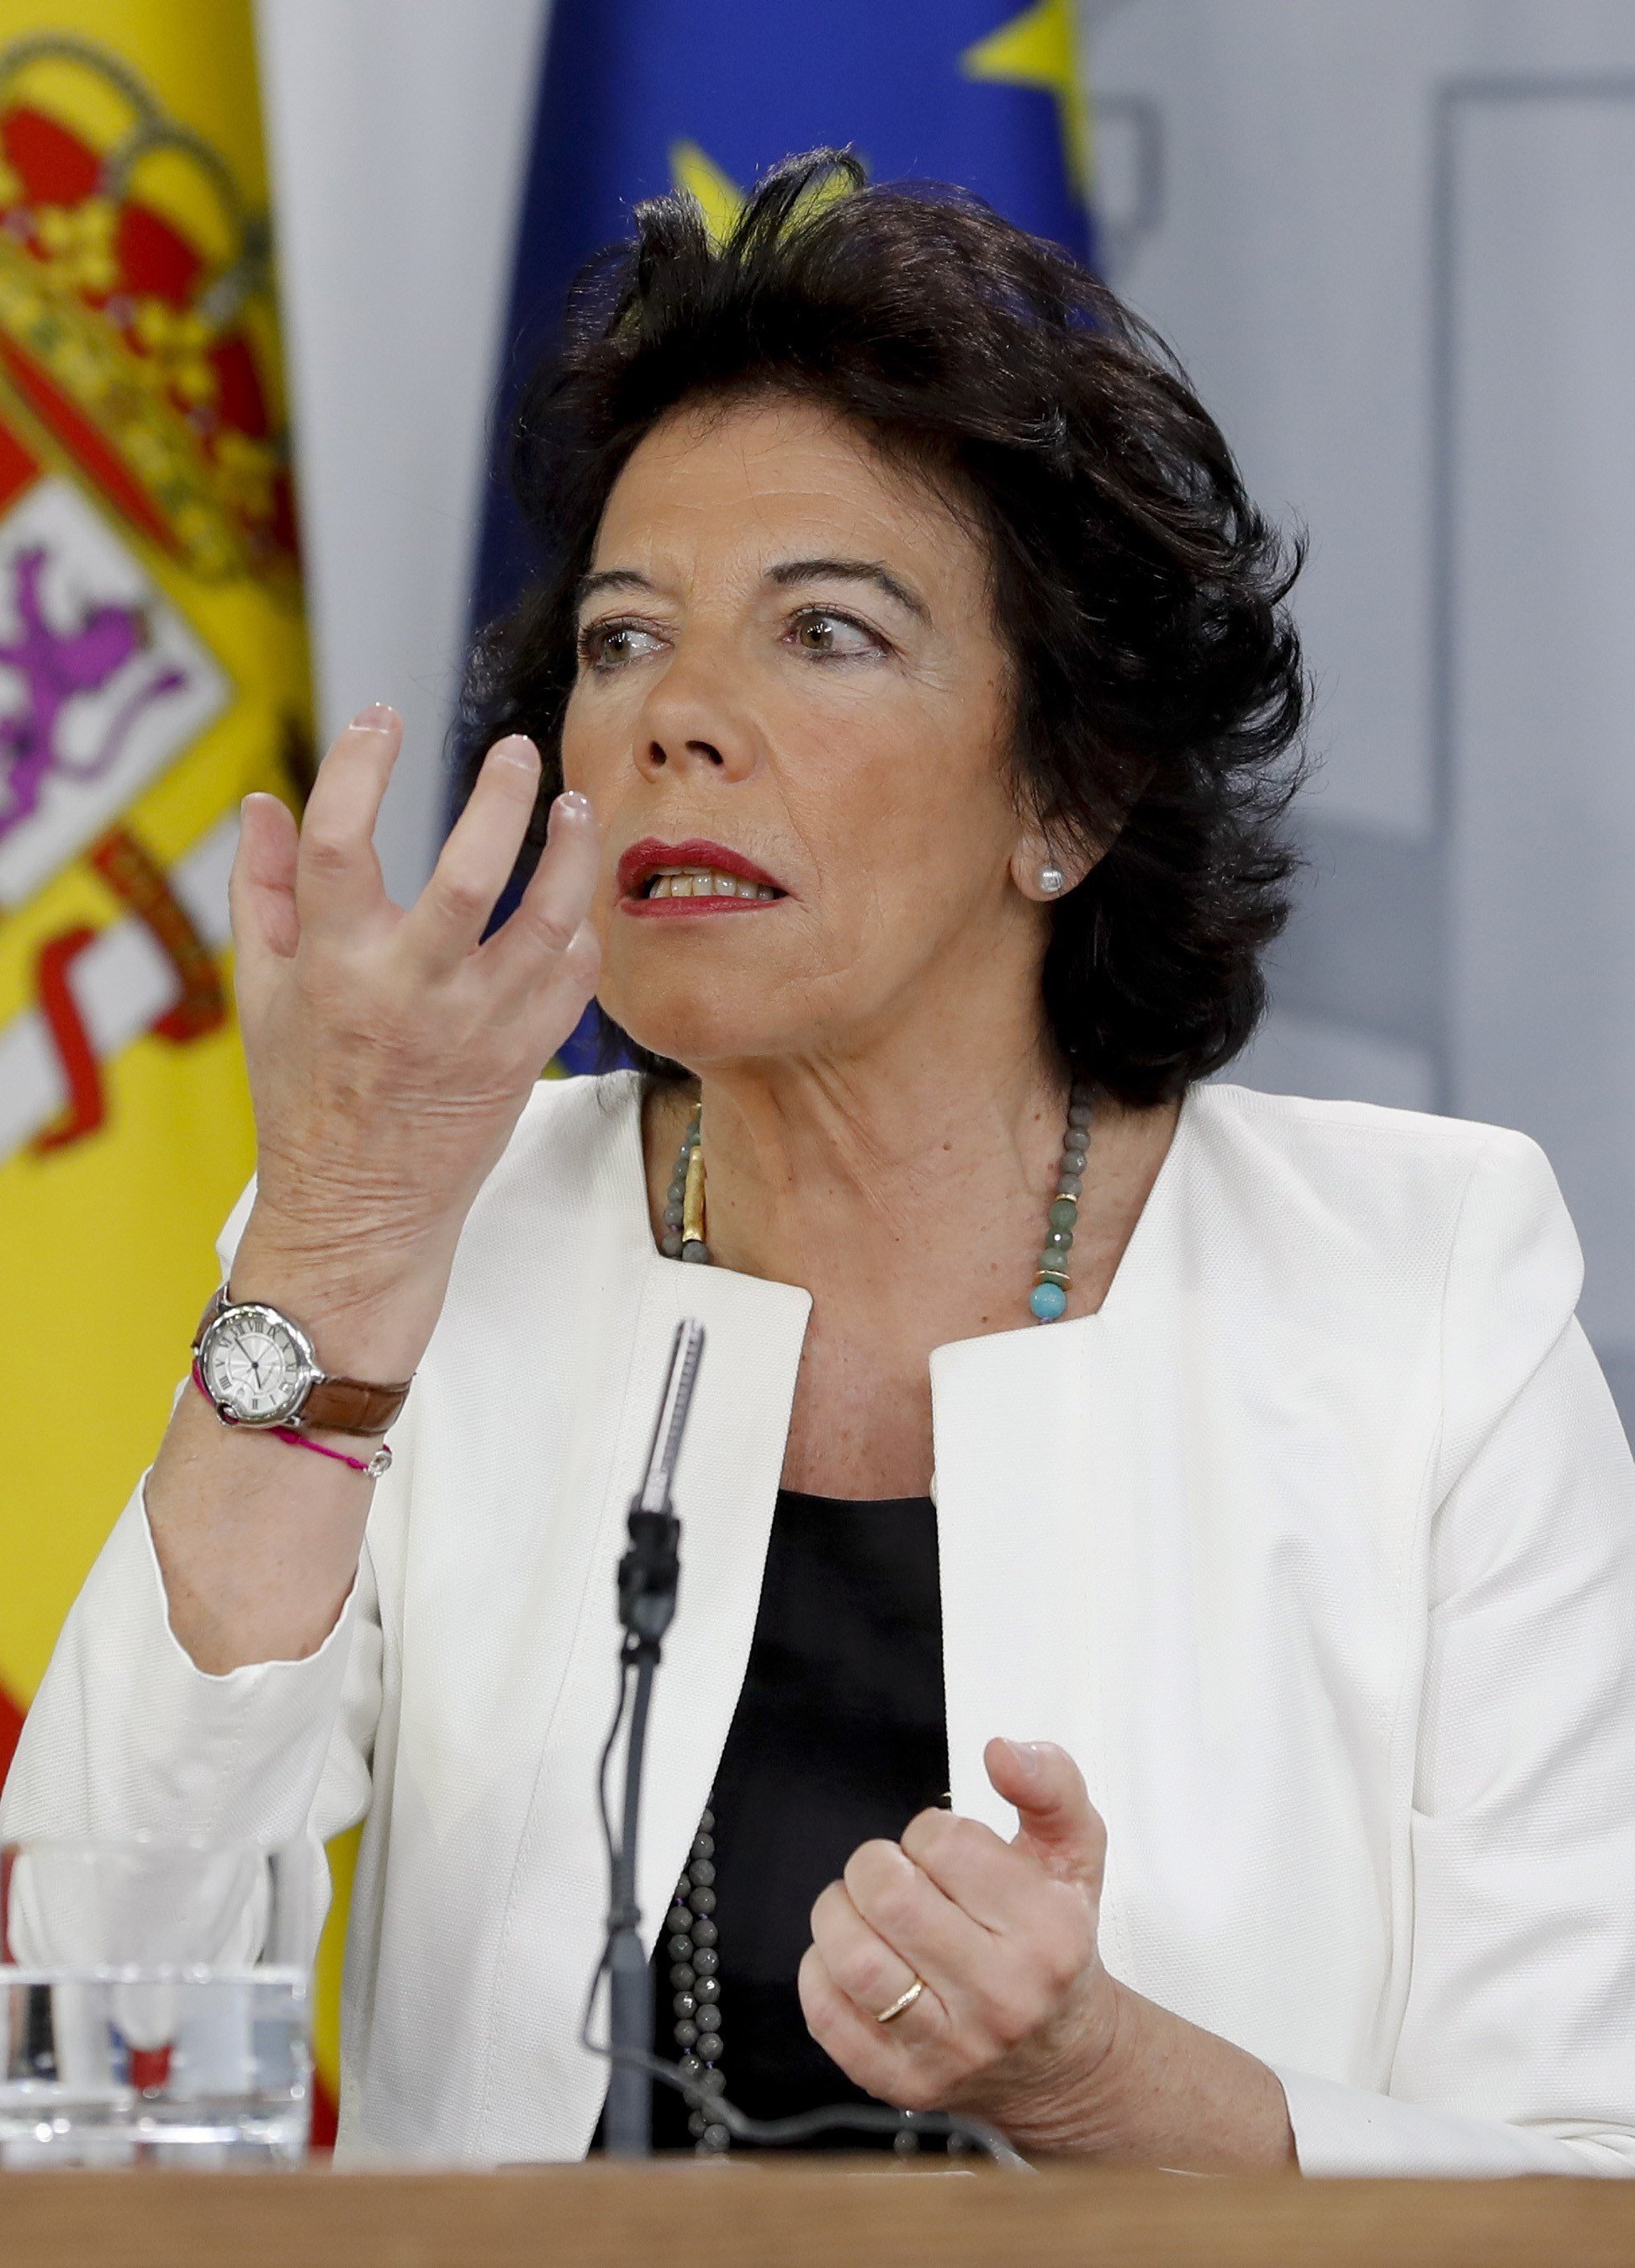 El govern espanyol, a Torra: “Les sentències han de ser acatades i la compliran”